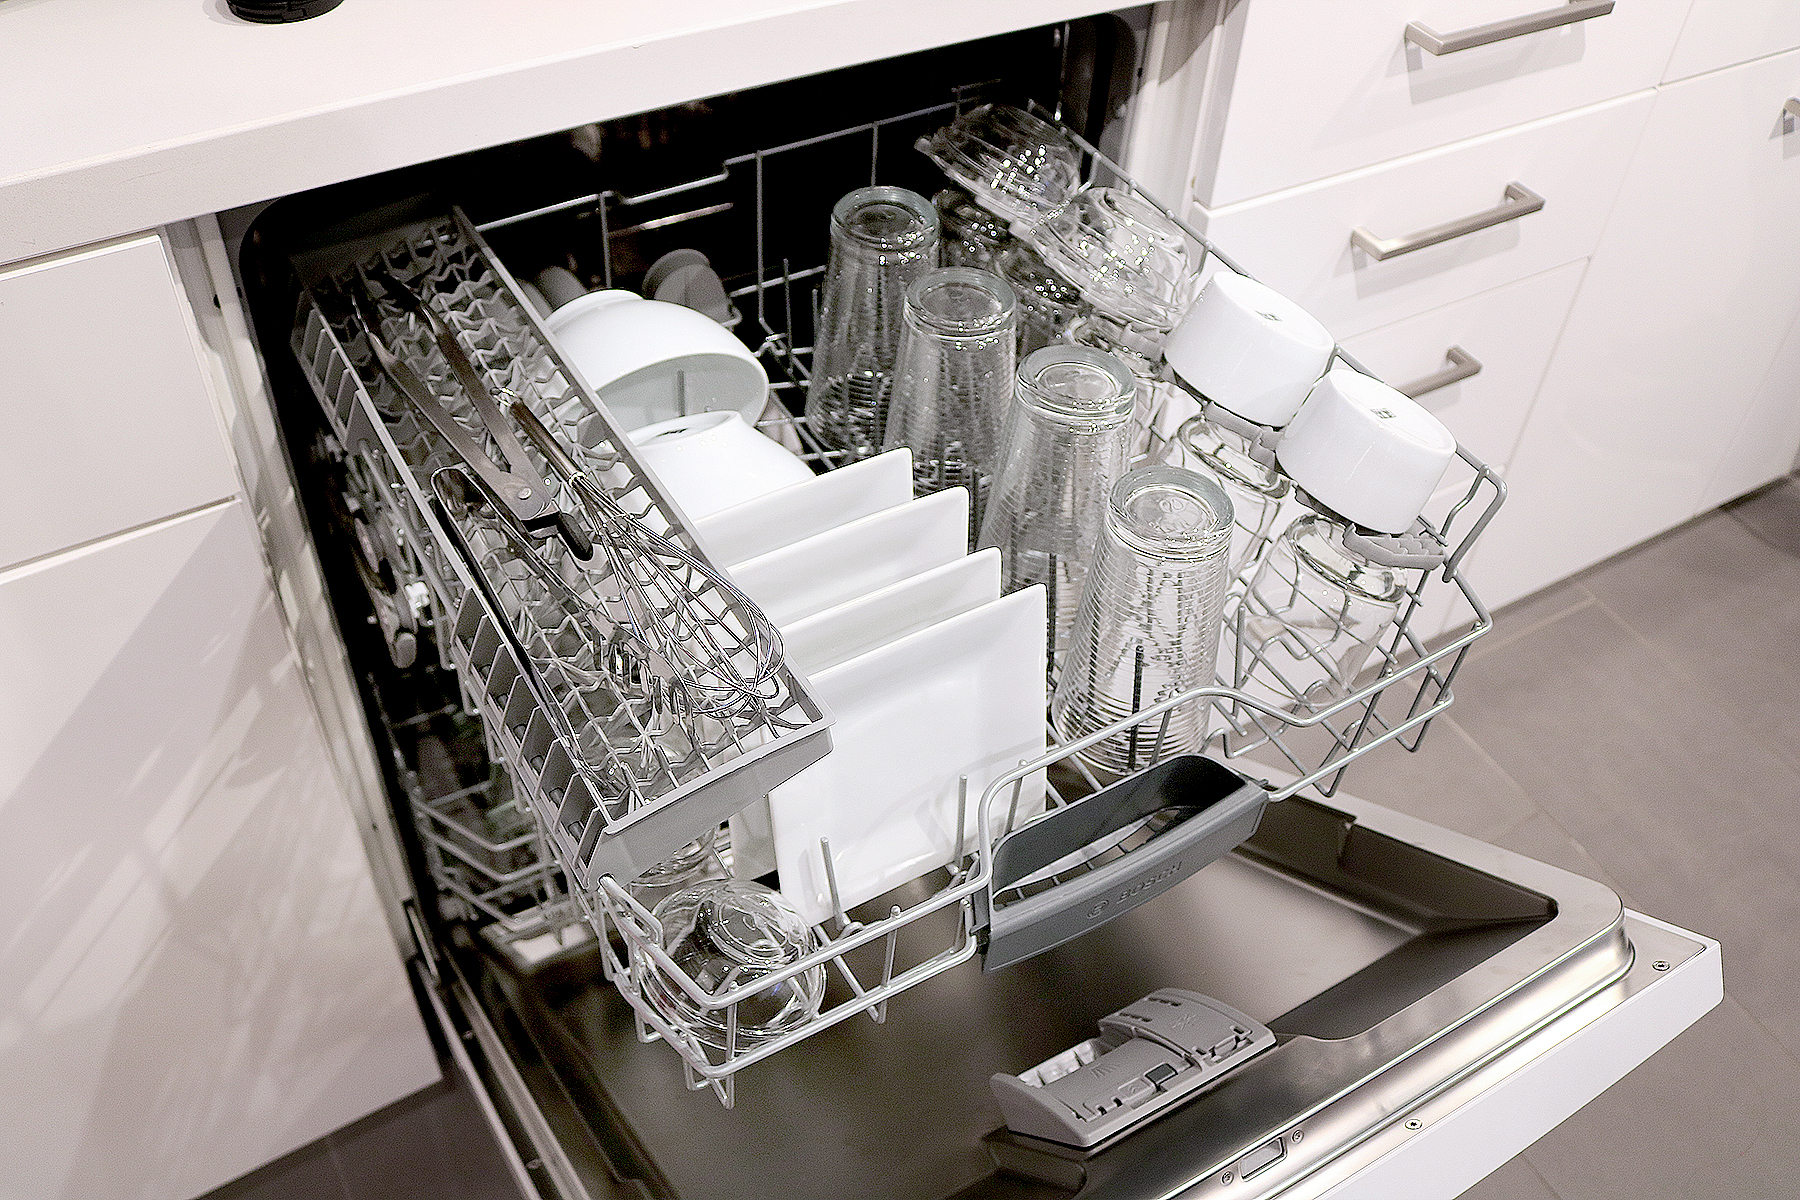 which dishwasher 2018